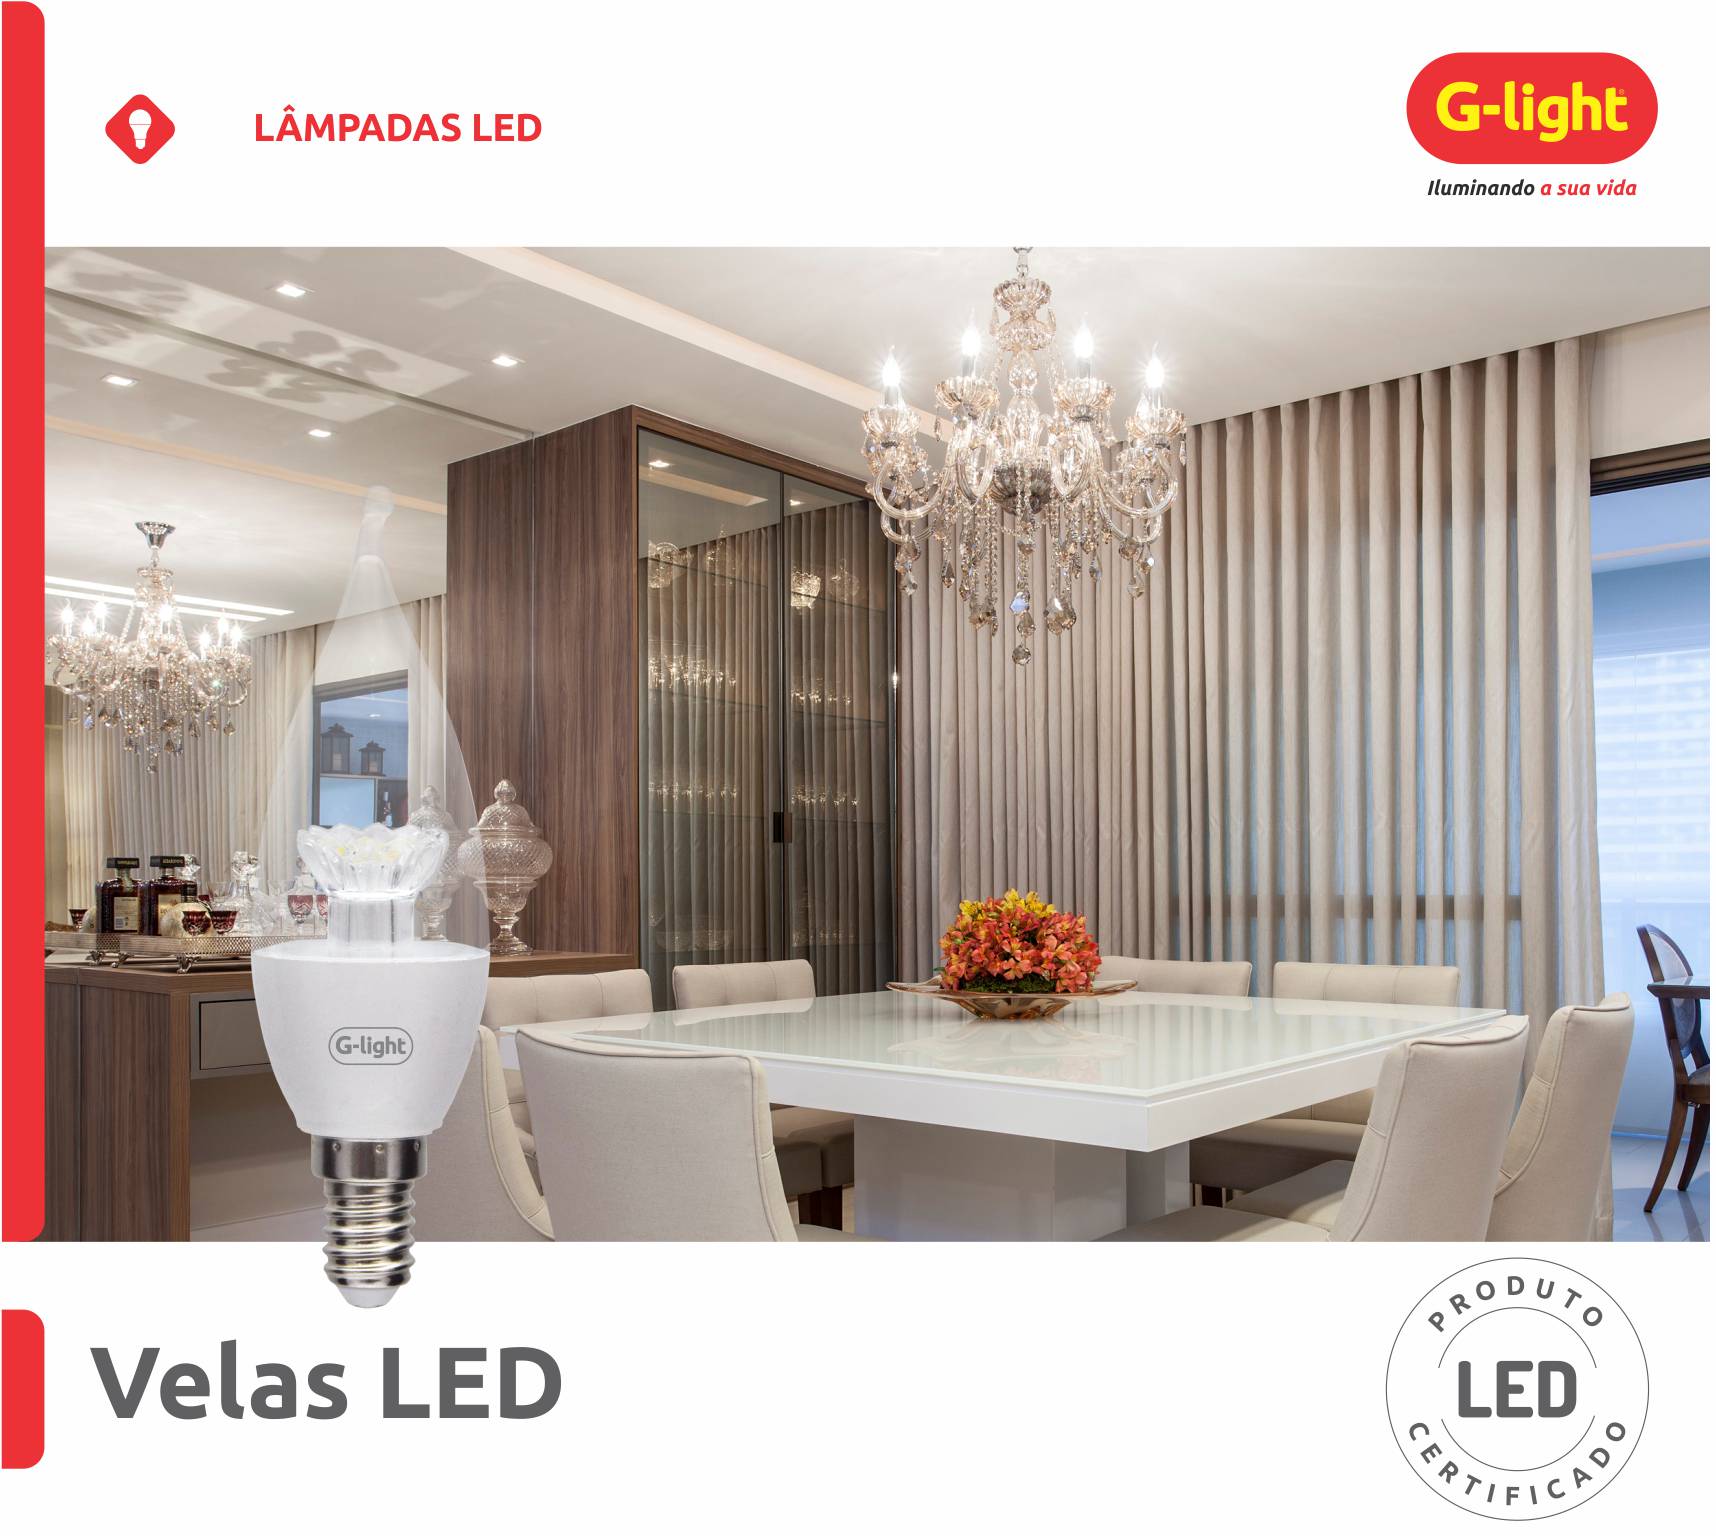 G-light - Lâmpadas, Luminárias e Acessórios de Alto Rendimento e Iluminação  por LED.